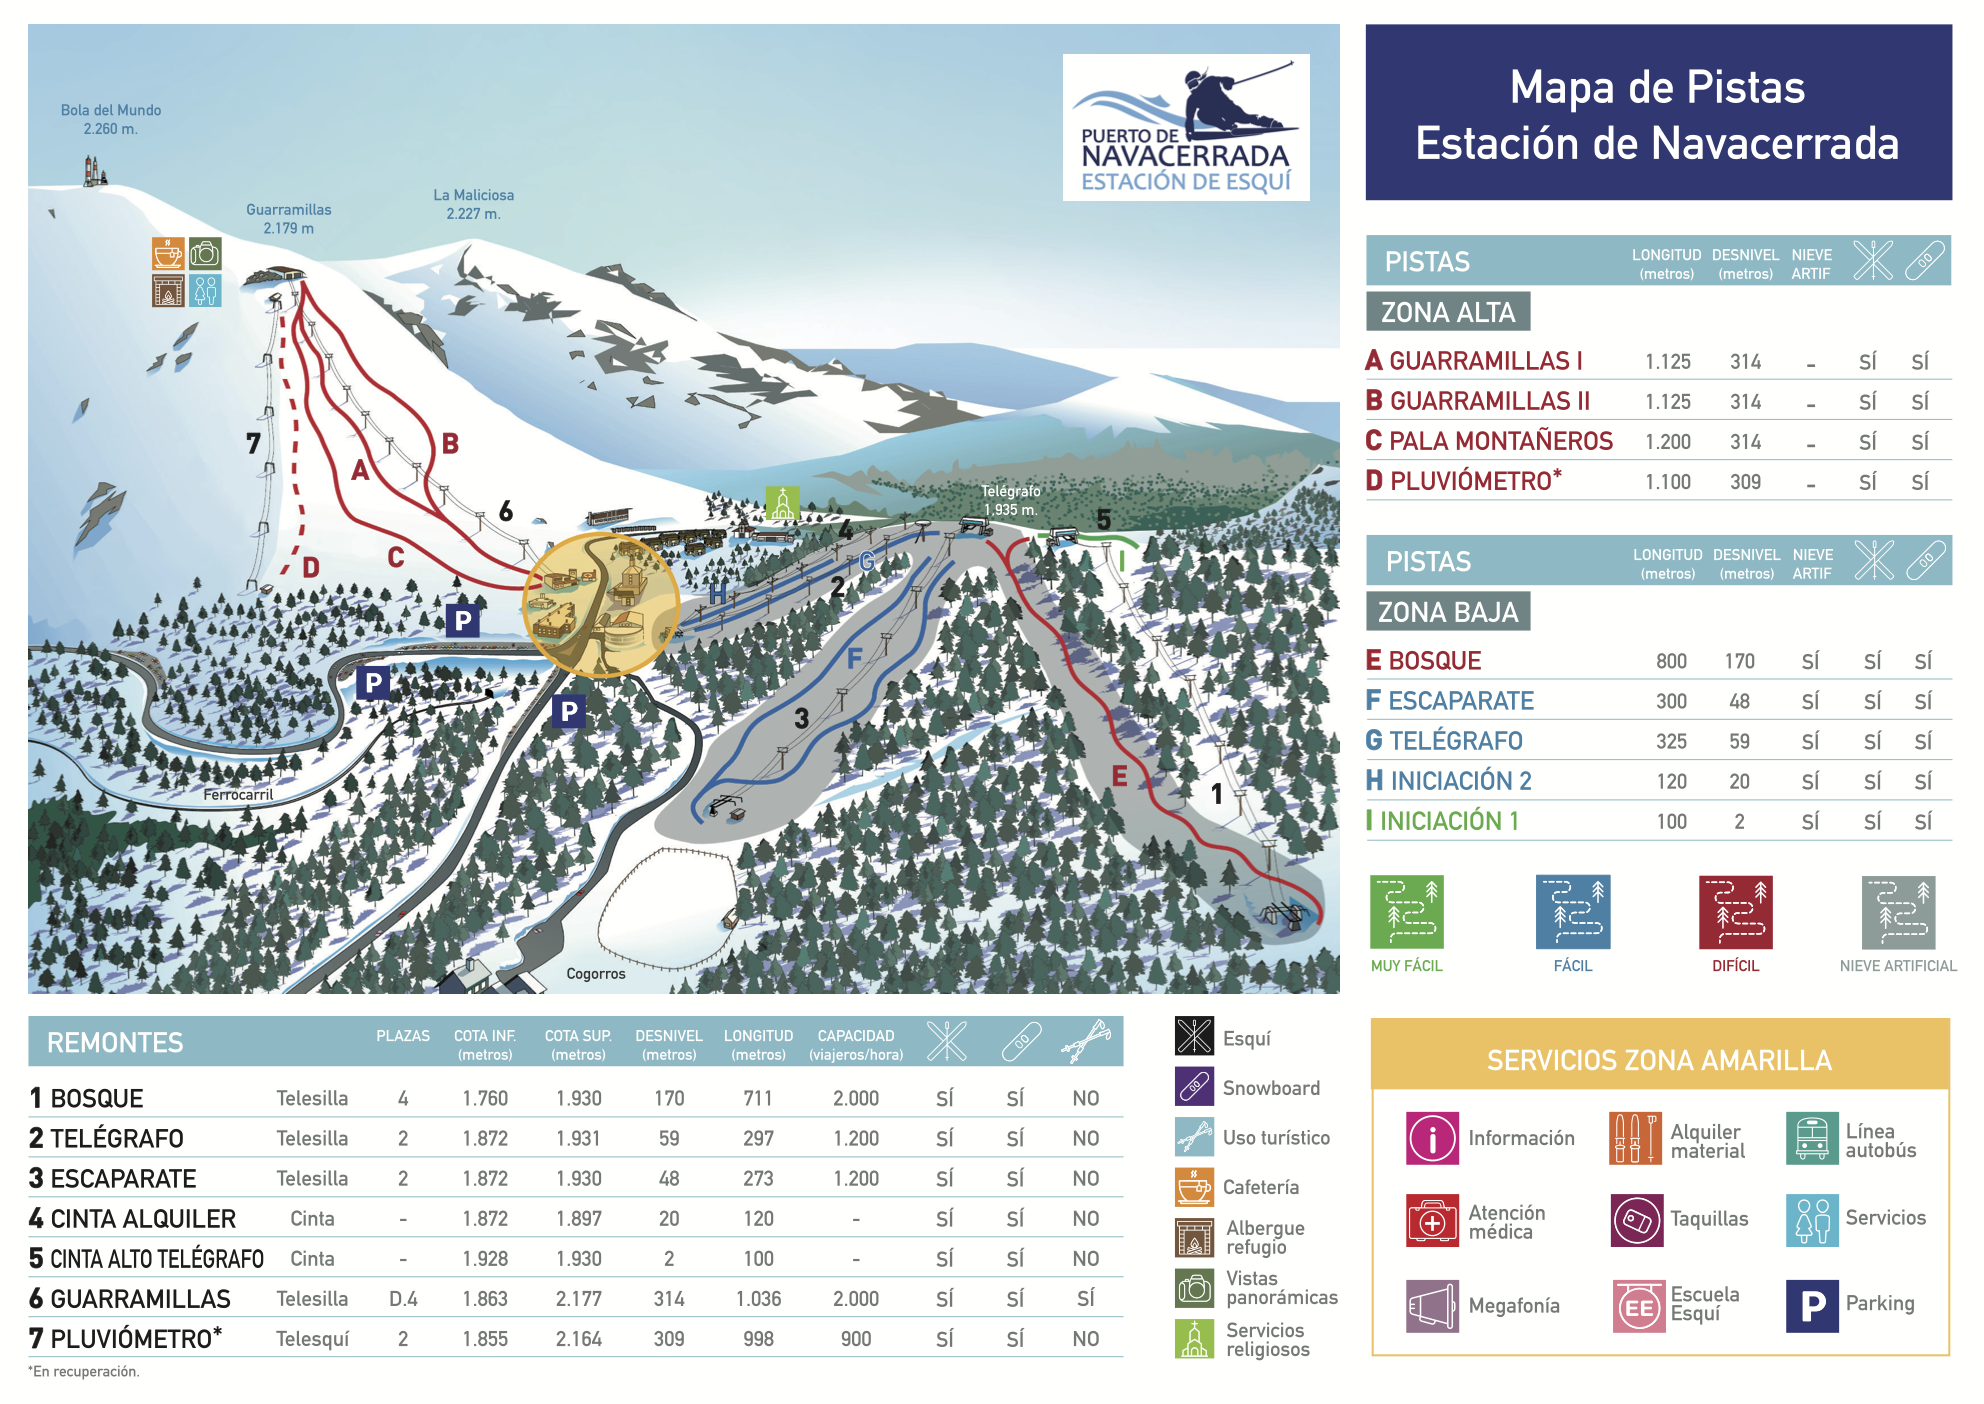 Copitos de Nieve - Estaciones de esquí, ski, snowboard - Mapa de la estación Navacerrada